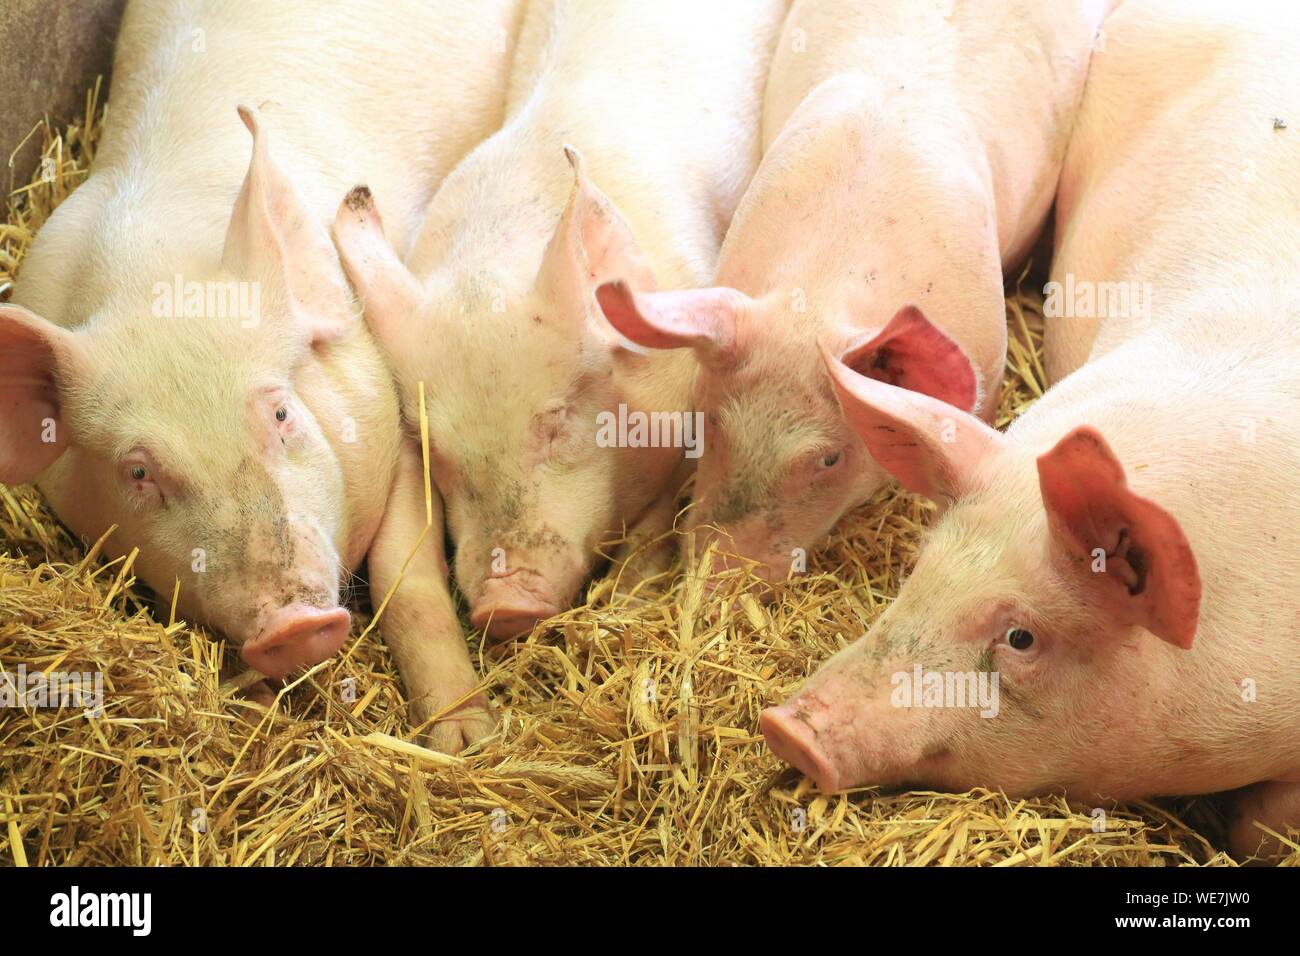 La France, l'Aveyron, Saint Sever du Moustier, ferme de Andre Pages, élevages de porcs élevés sur paille Apalhat Banque D'Images